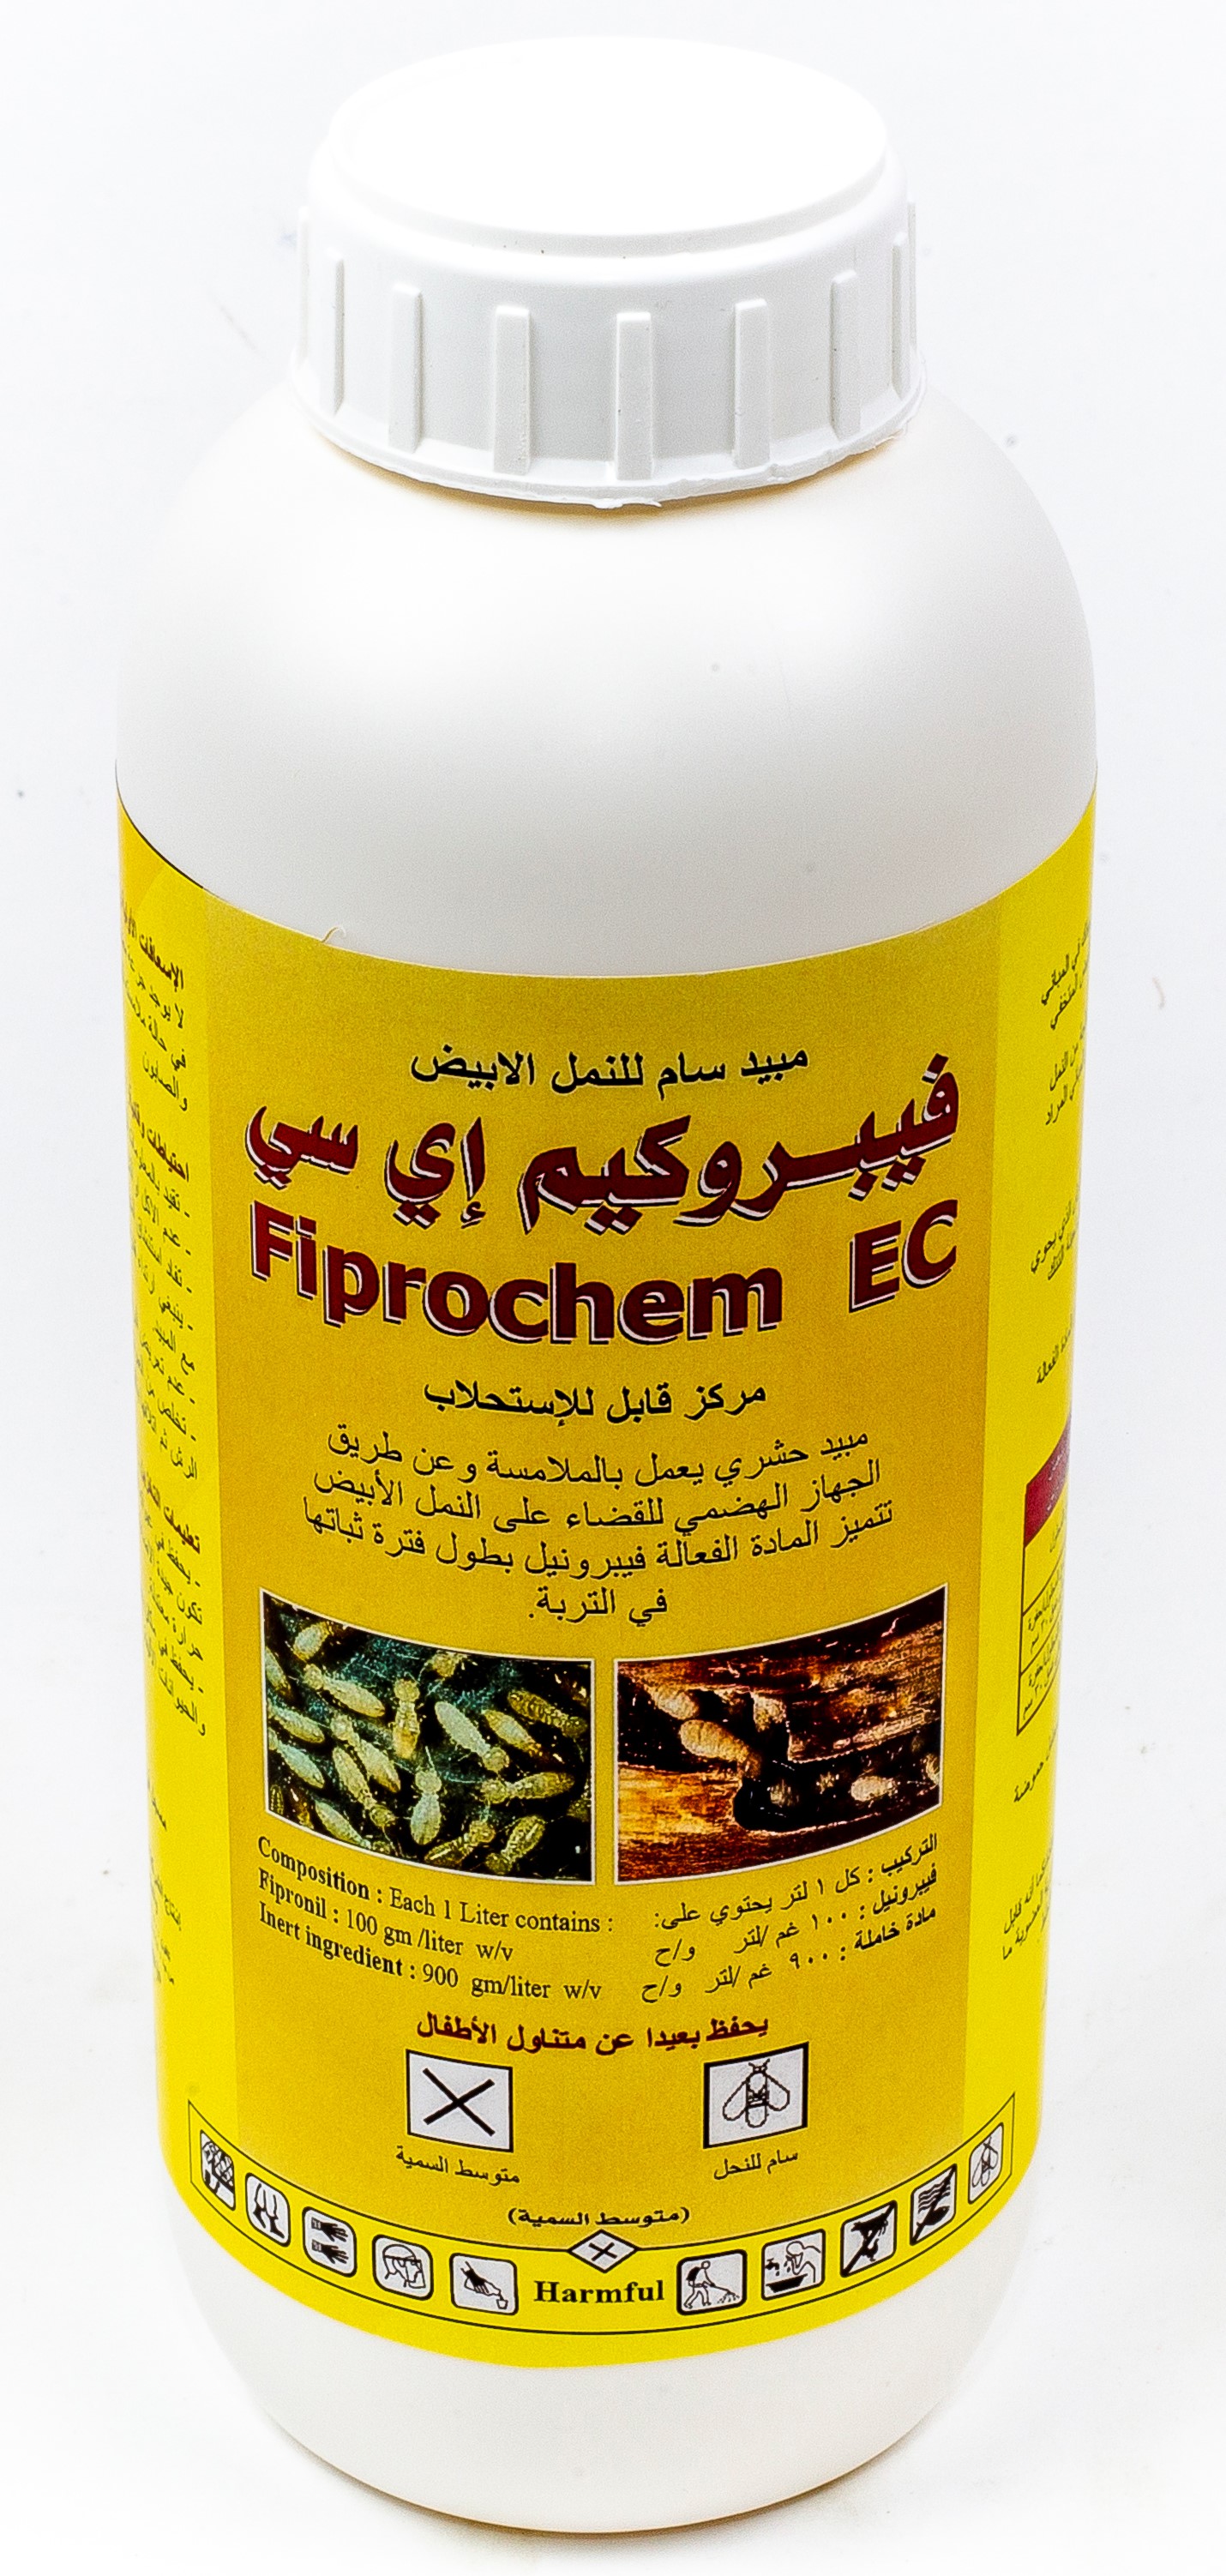 Fiprochem 10 EC